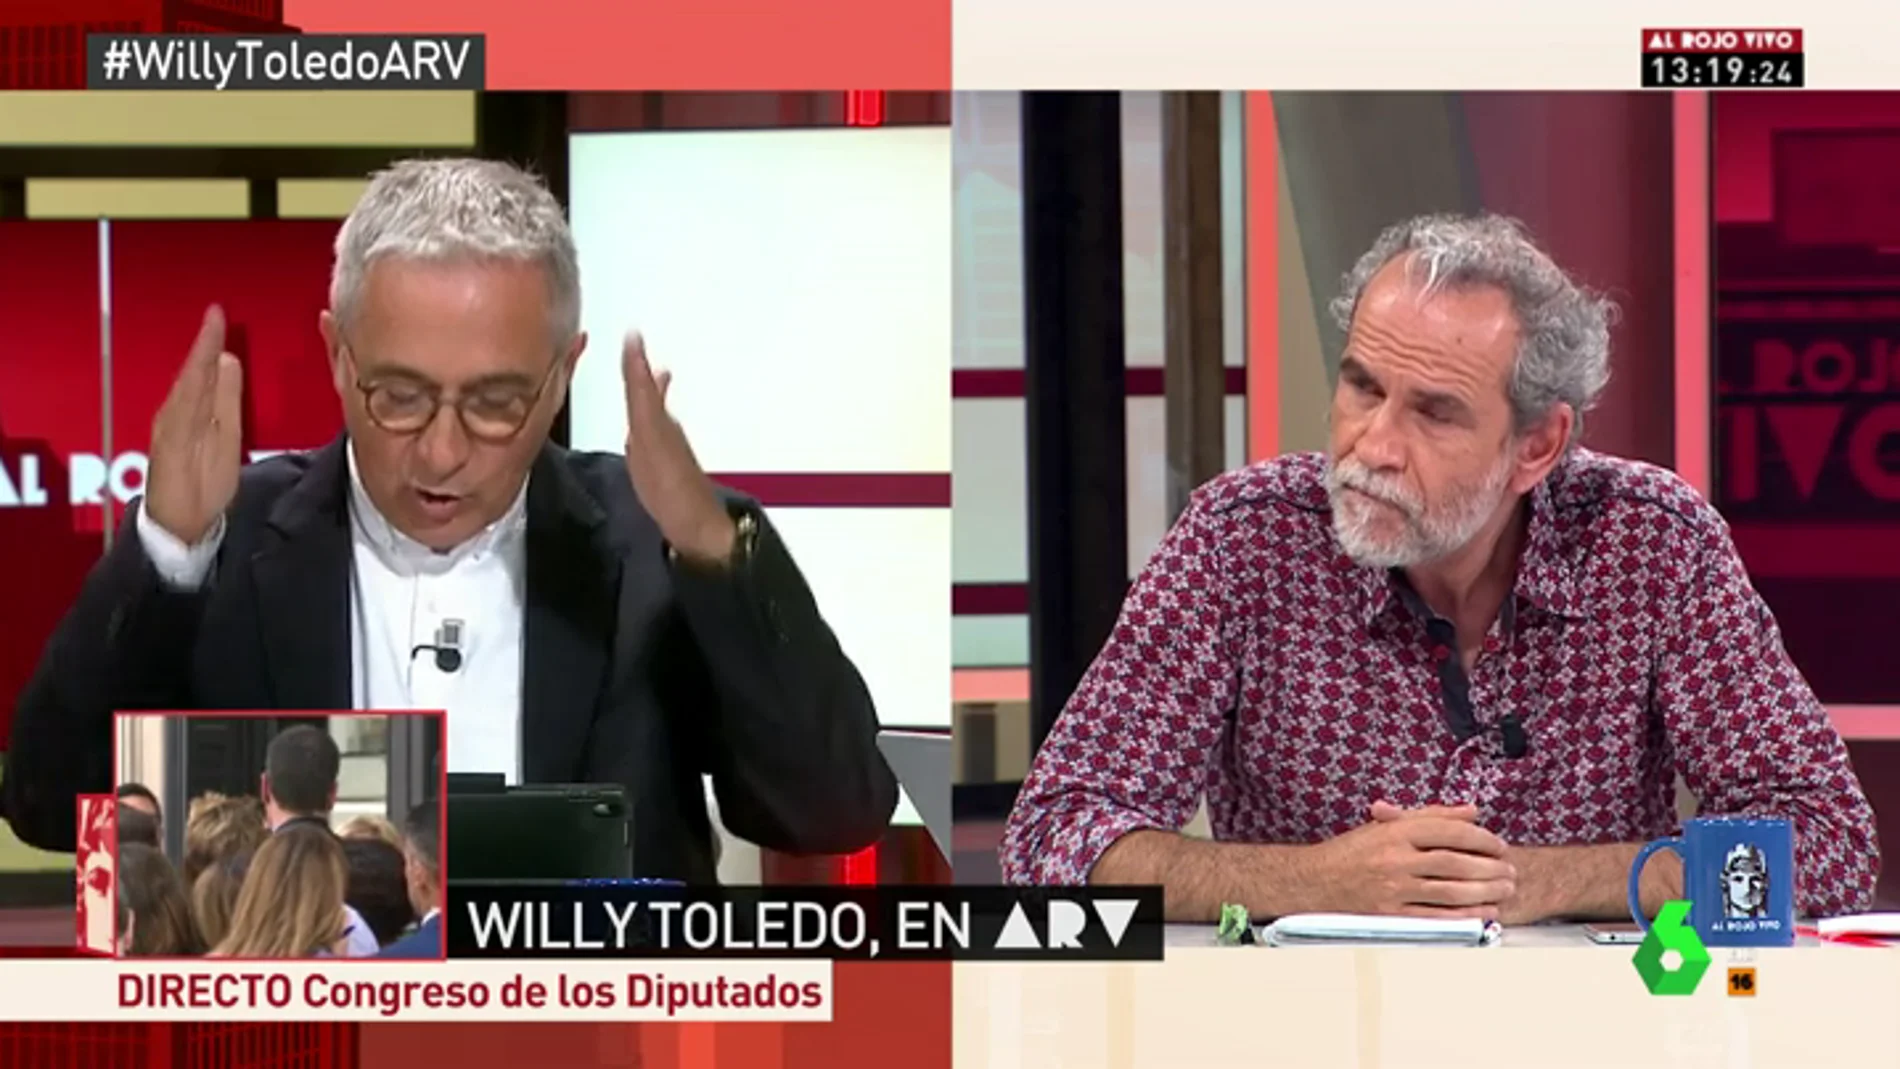 La calidad democrática de España provoca un tenso debate entre Willy Toledo y Xavier Sardà: "En Cuba hay pena de muerte, coño"